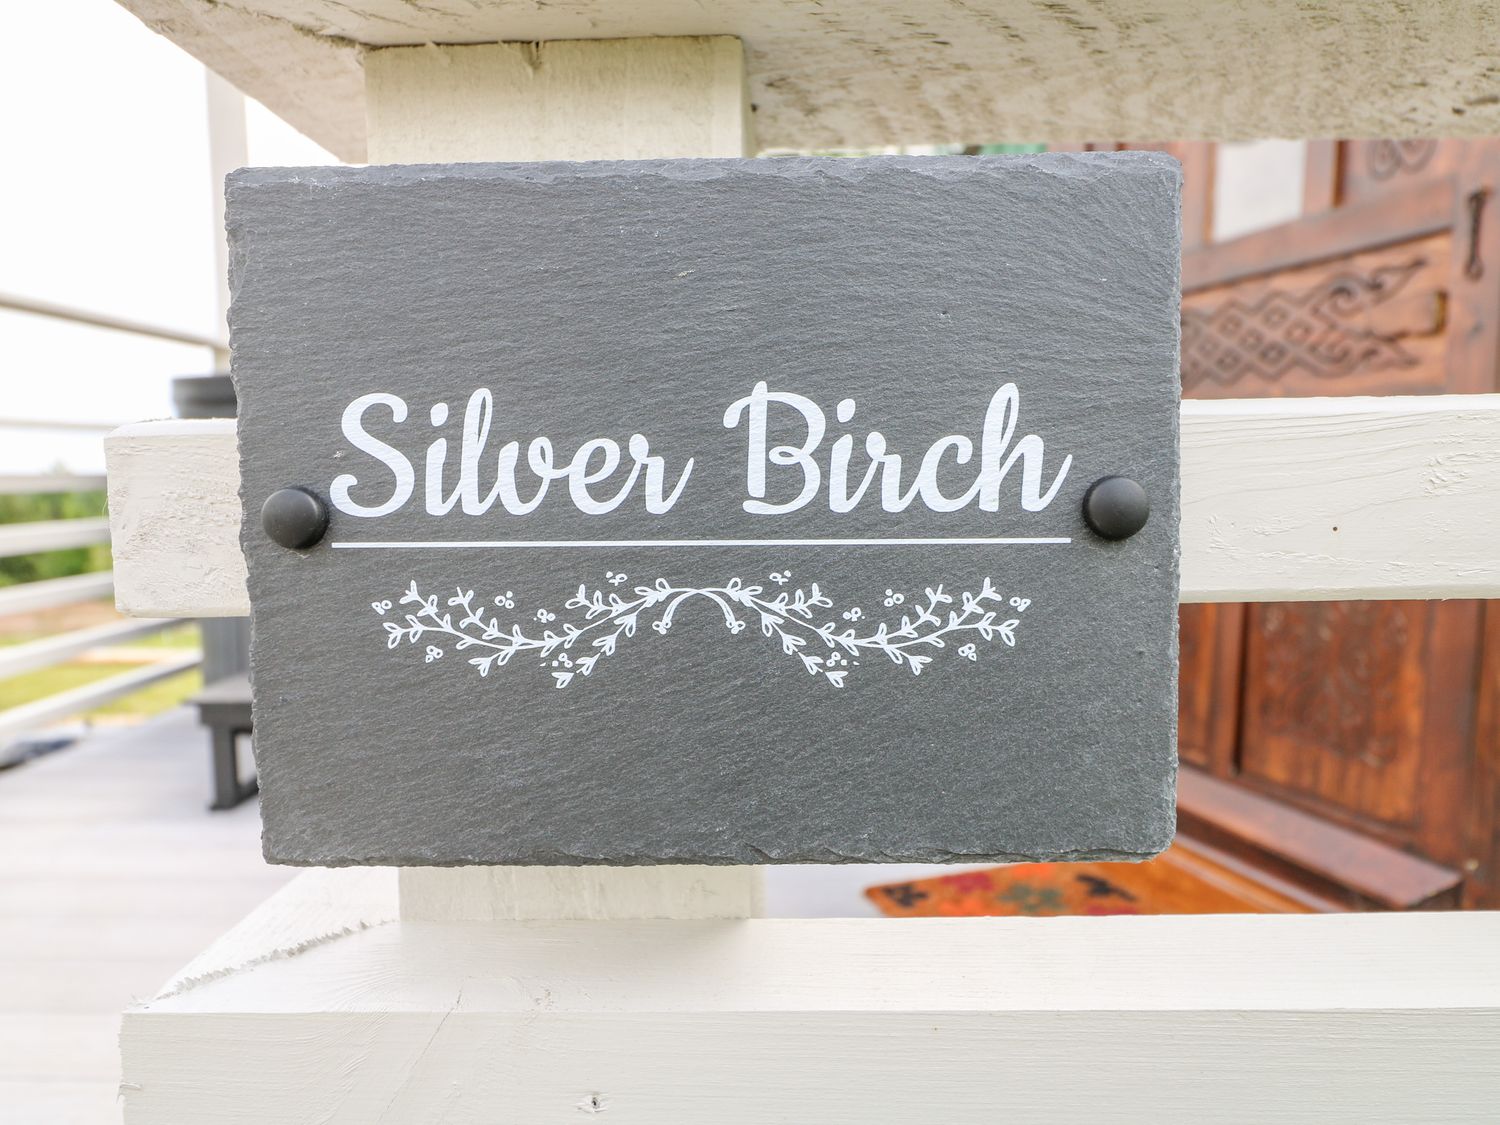 Silver Birch, Ashover